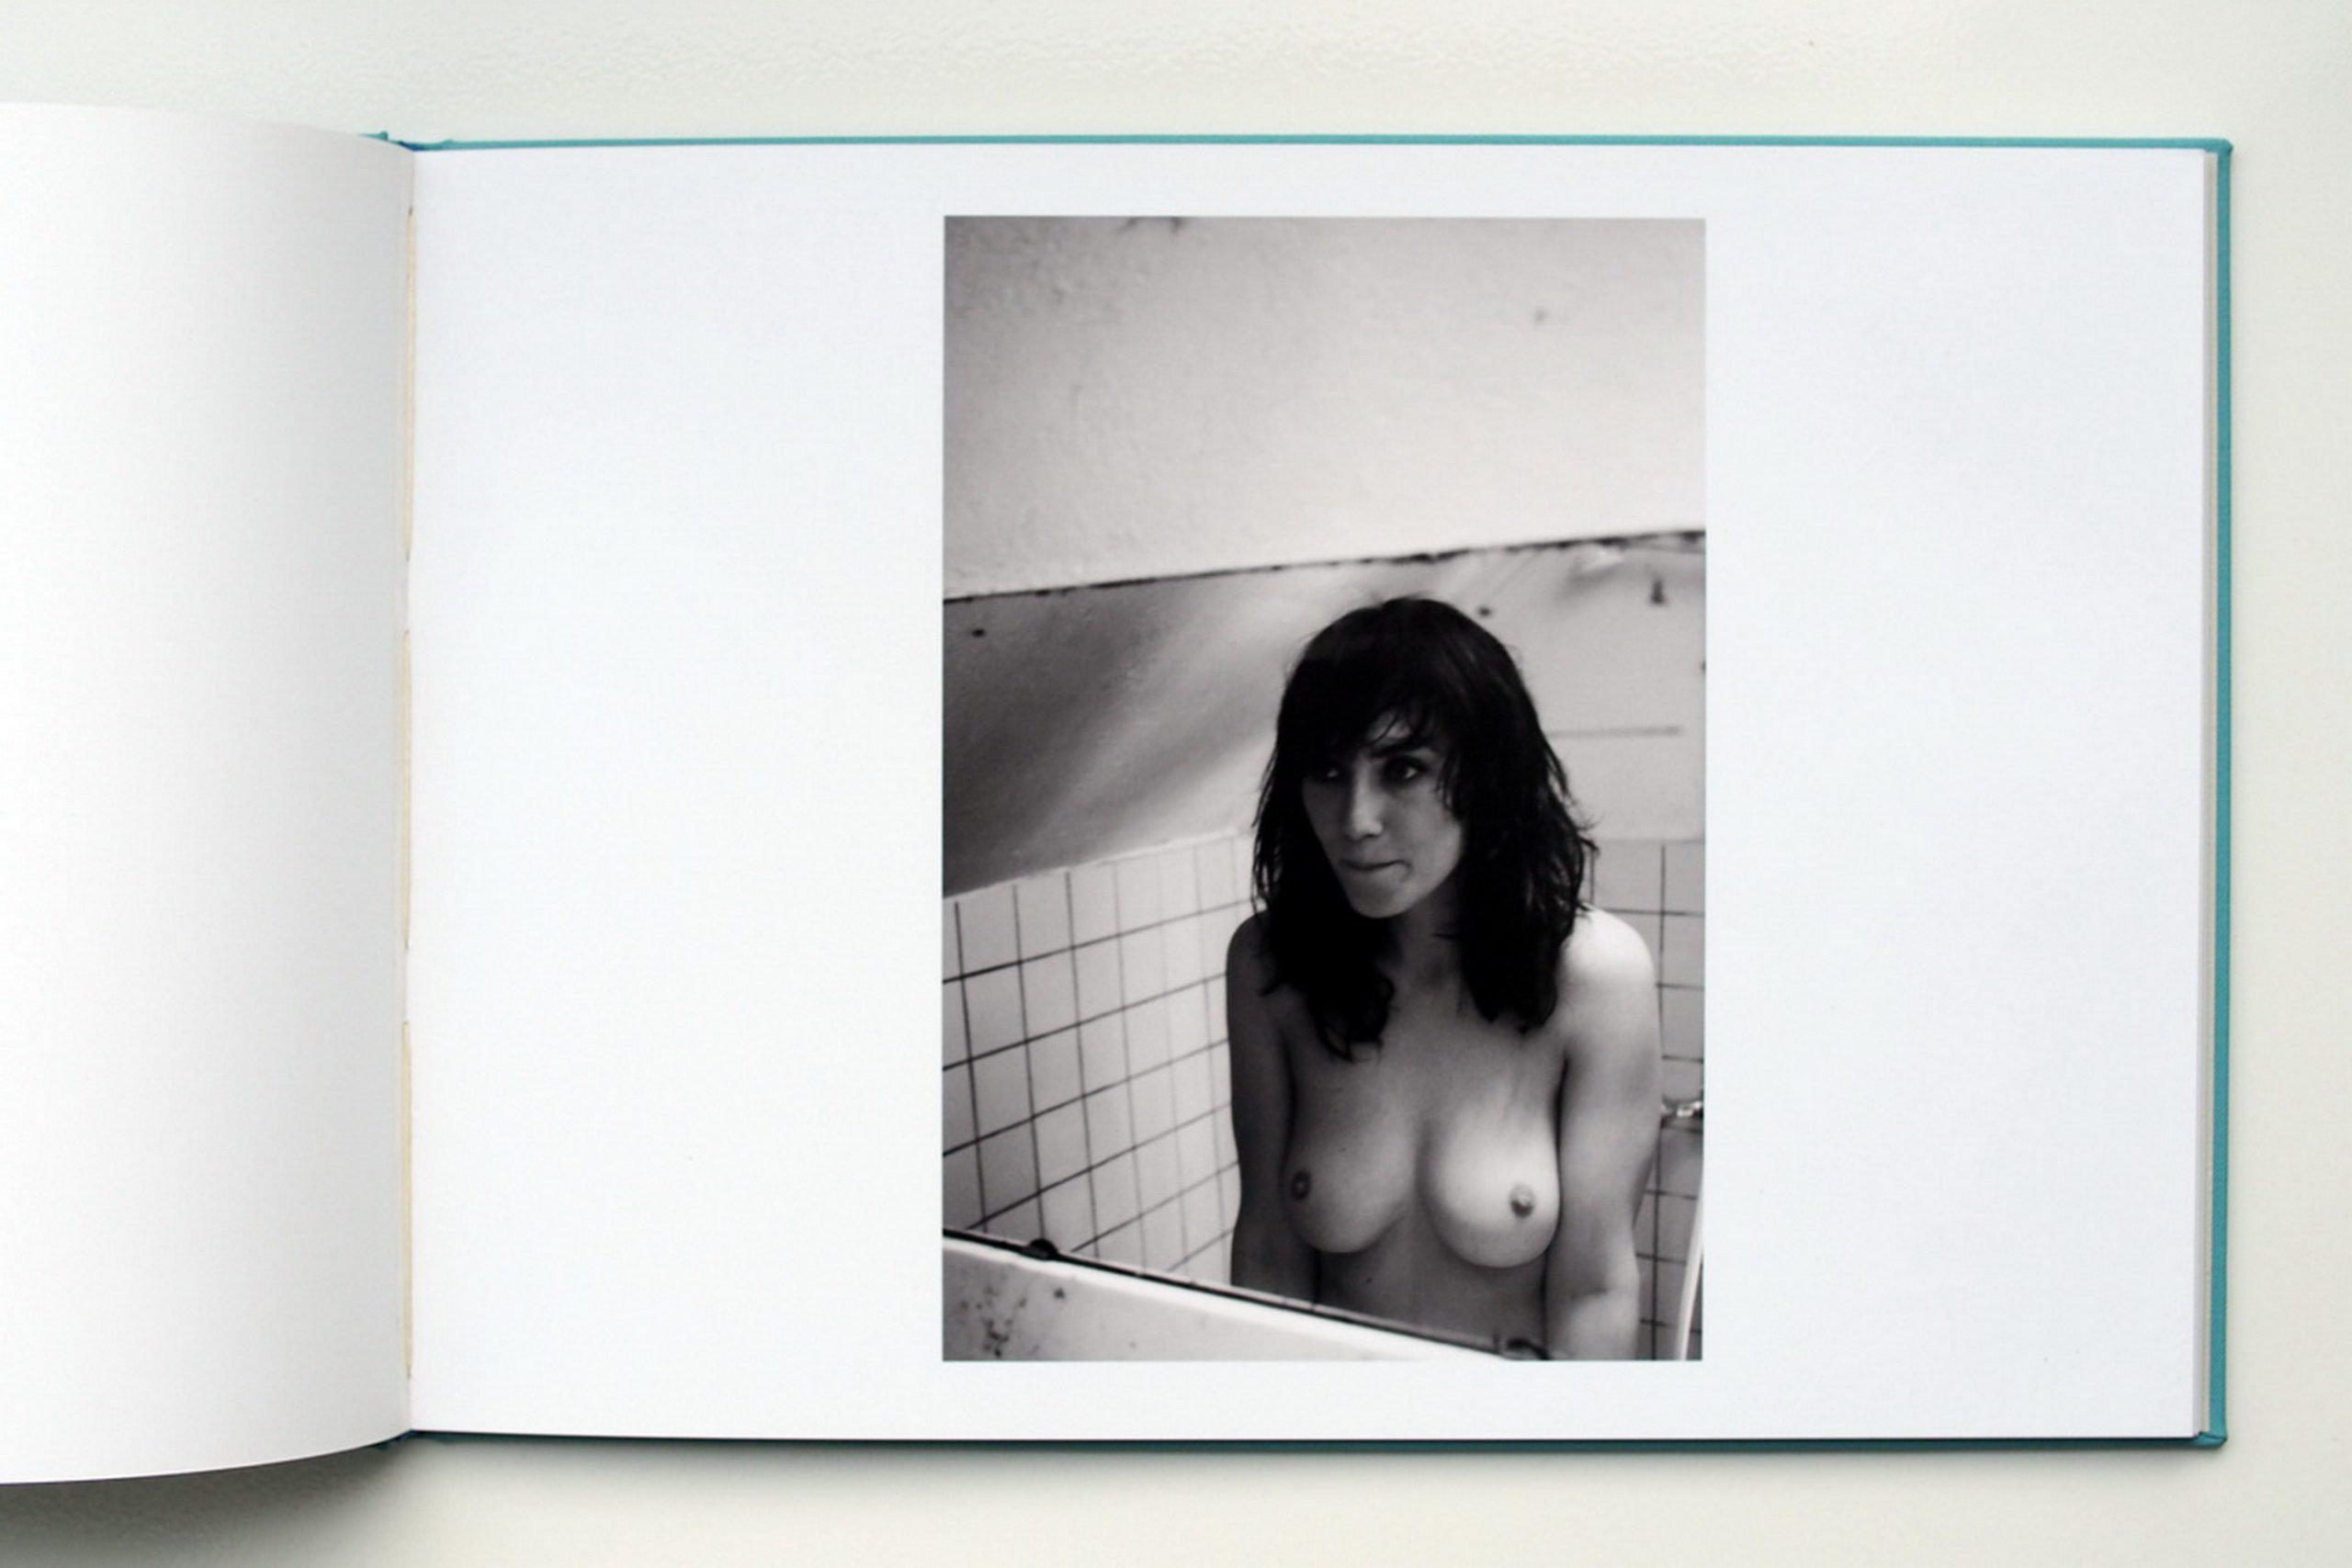 Dutch Hottie Carice van Houten Shows Her Nude Body in B&W